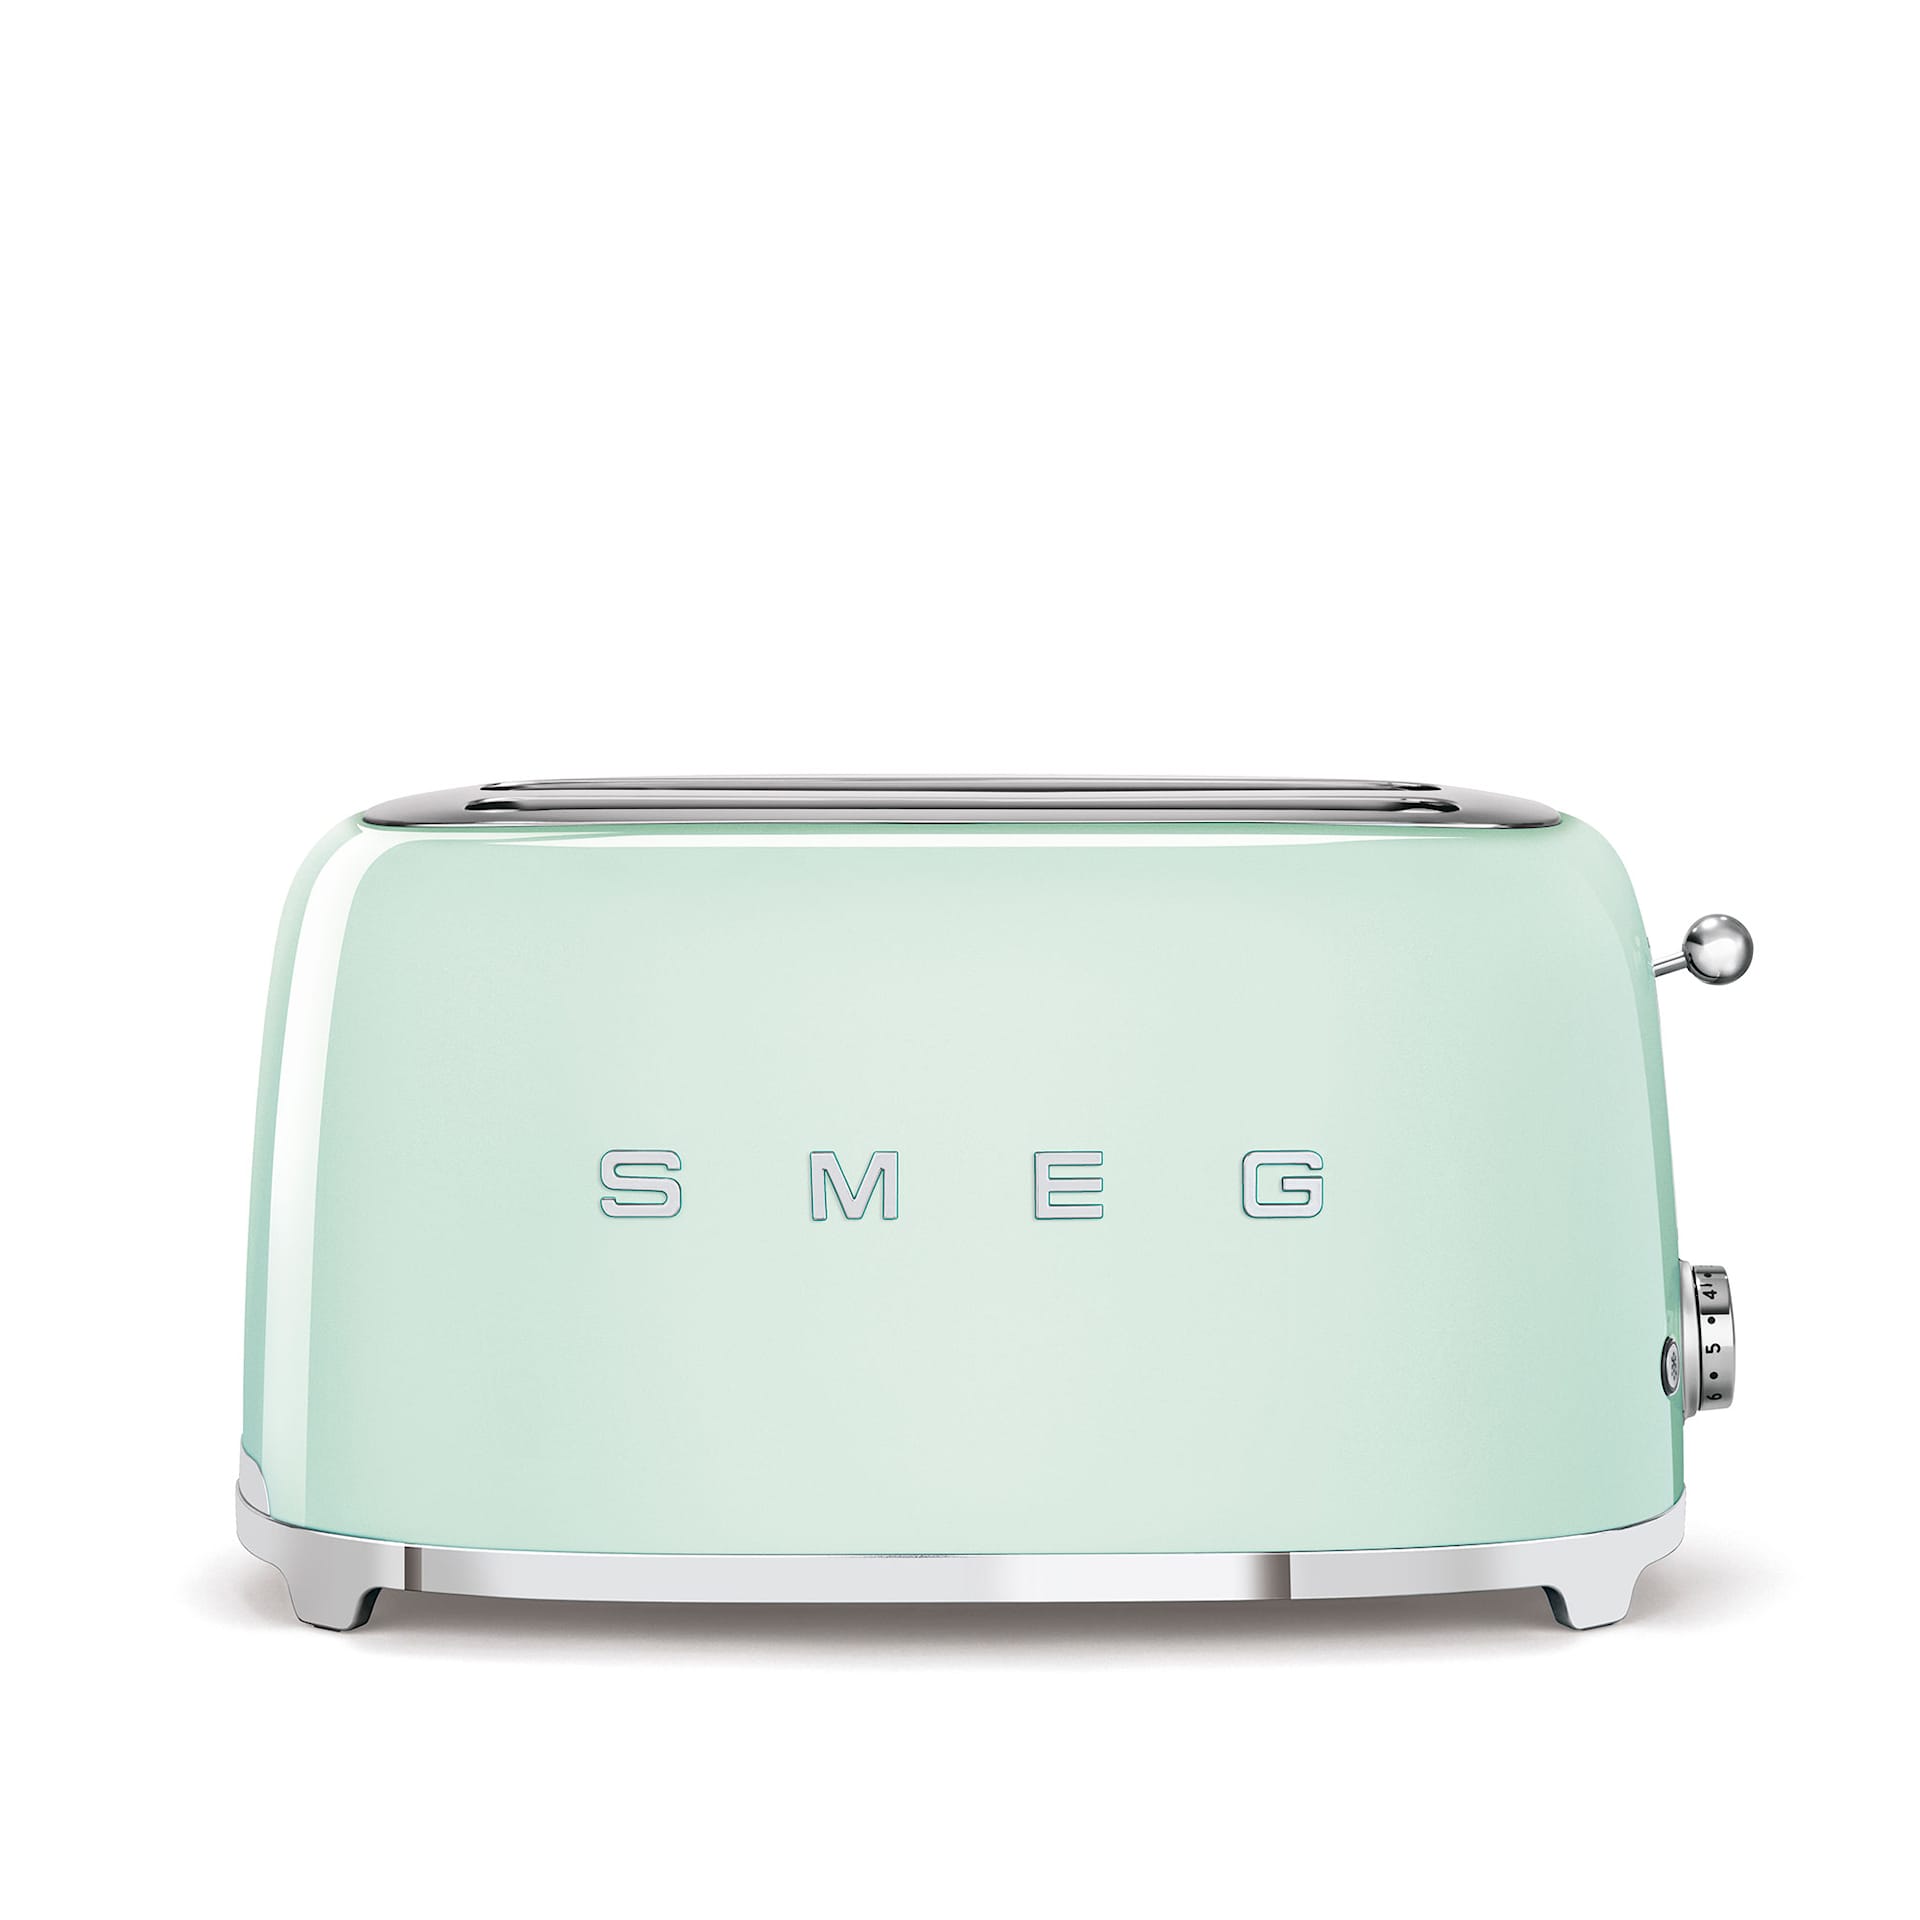 Smeg 4 Slice Toaster Pastel Green - Smeg - NO GA